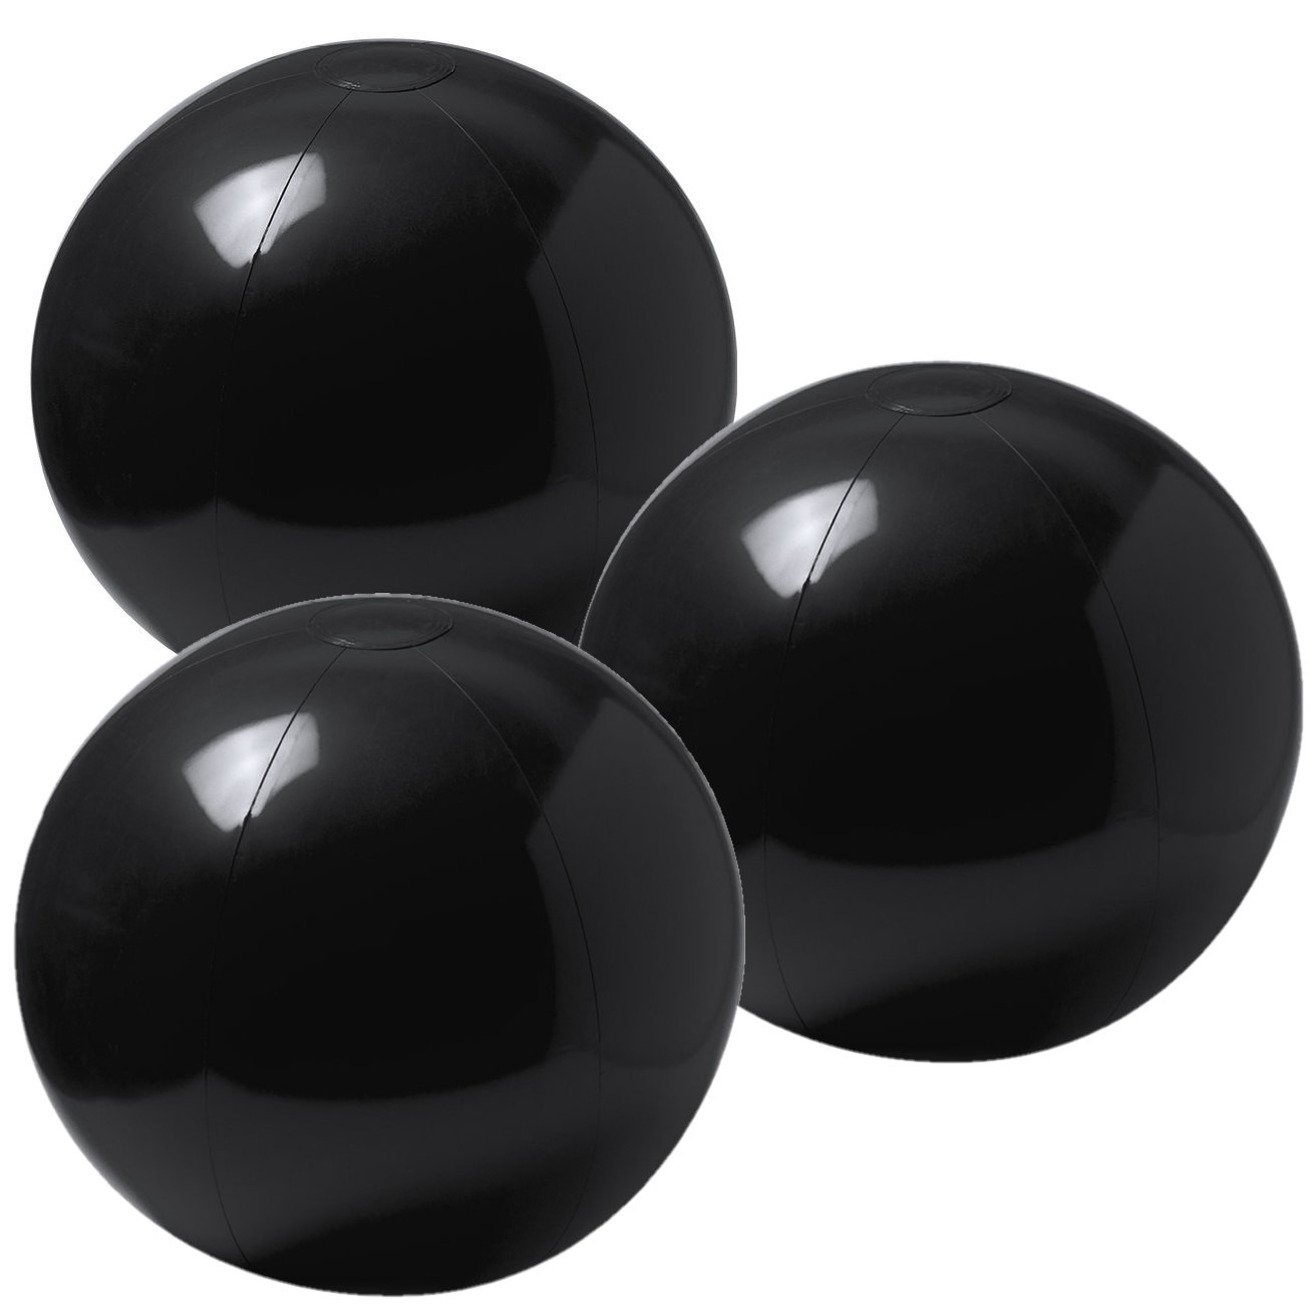 10x stuks opblaasbare strandballen extra groot plastic zwart 40 cm